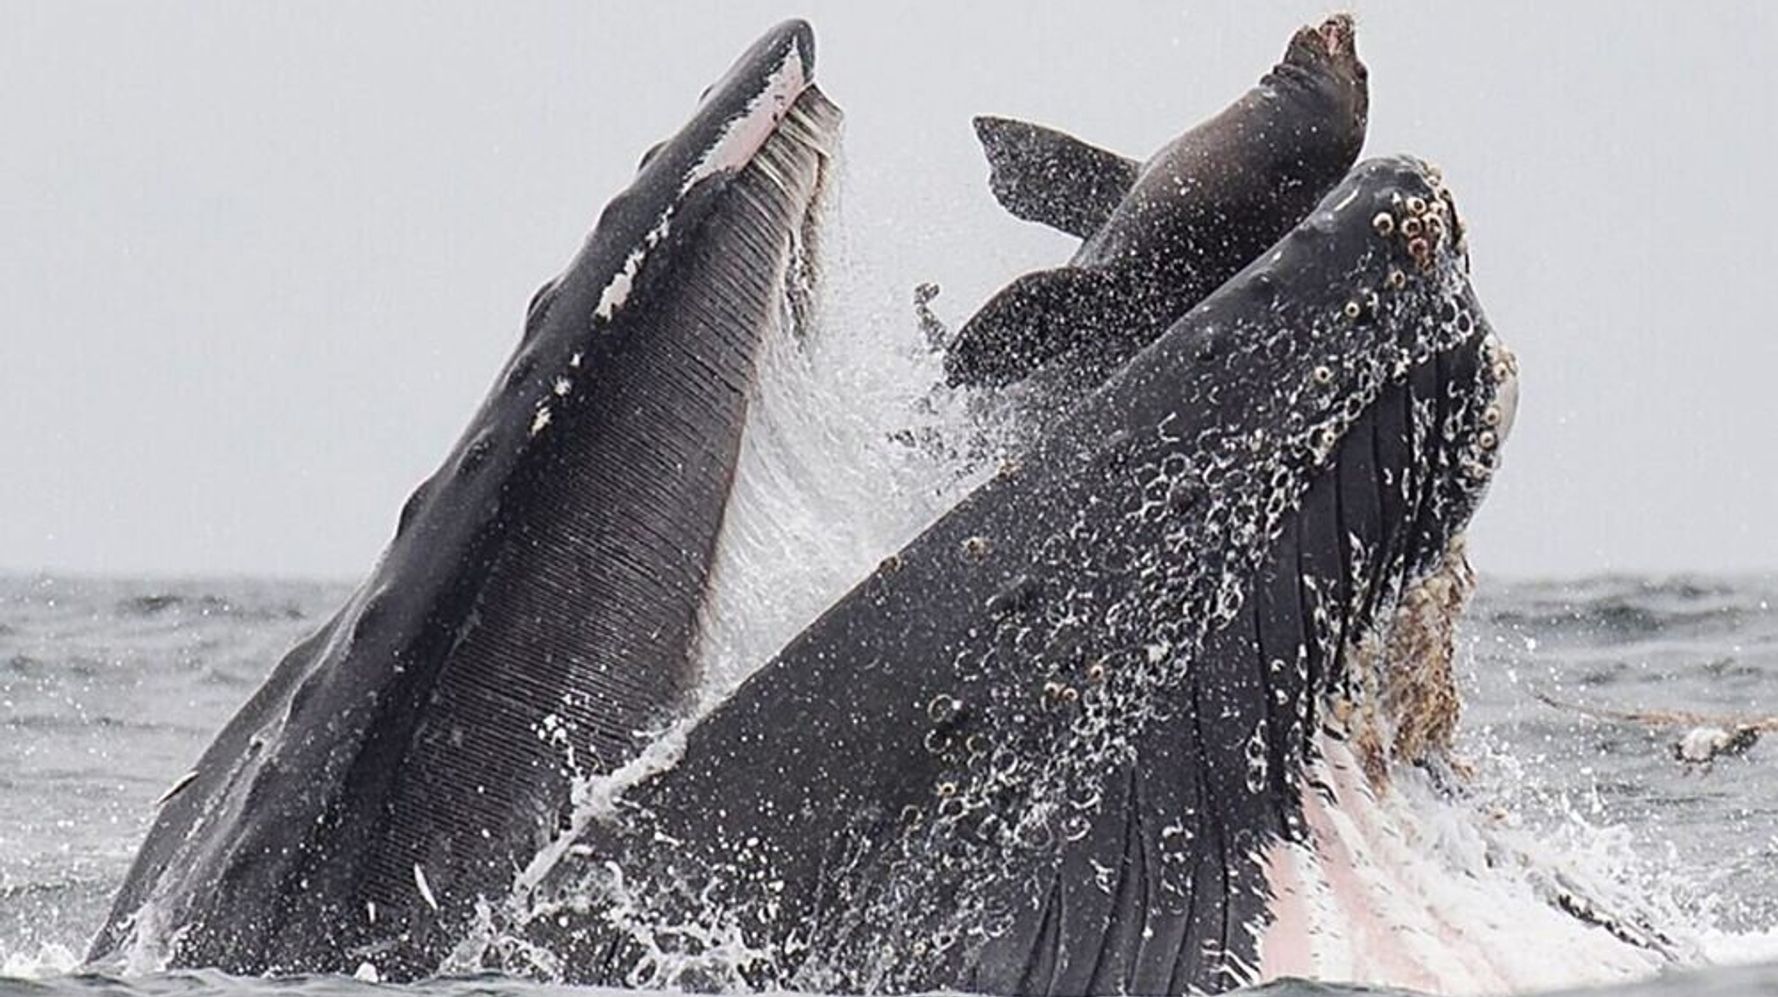 クジラがアシカを丸呑みする写真が衝撃的 信じられないものを目撃した カメラマンも驚がく ハフポスト News